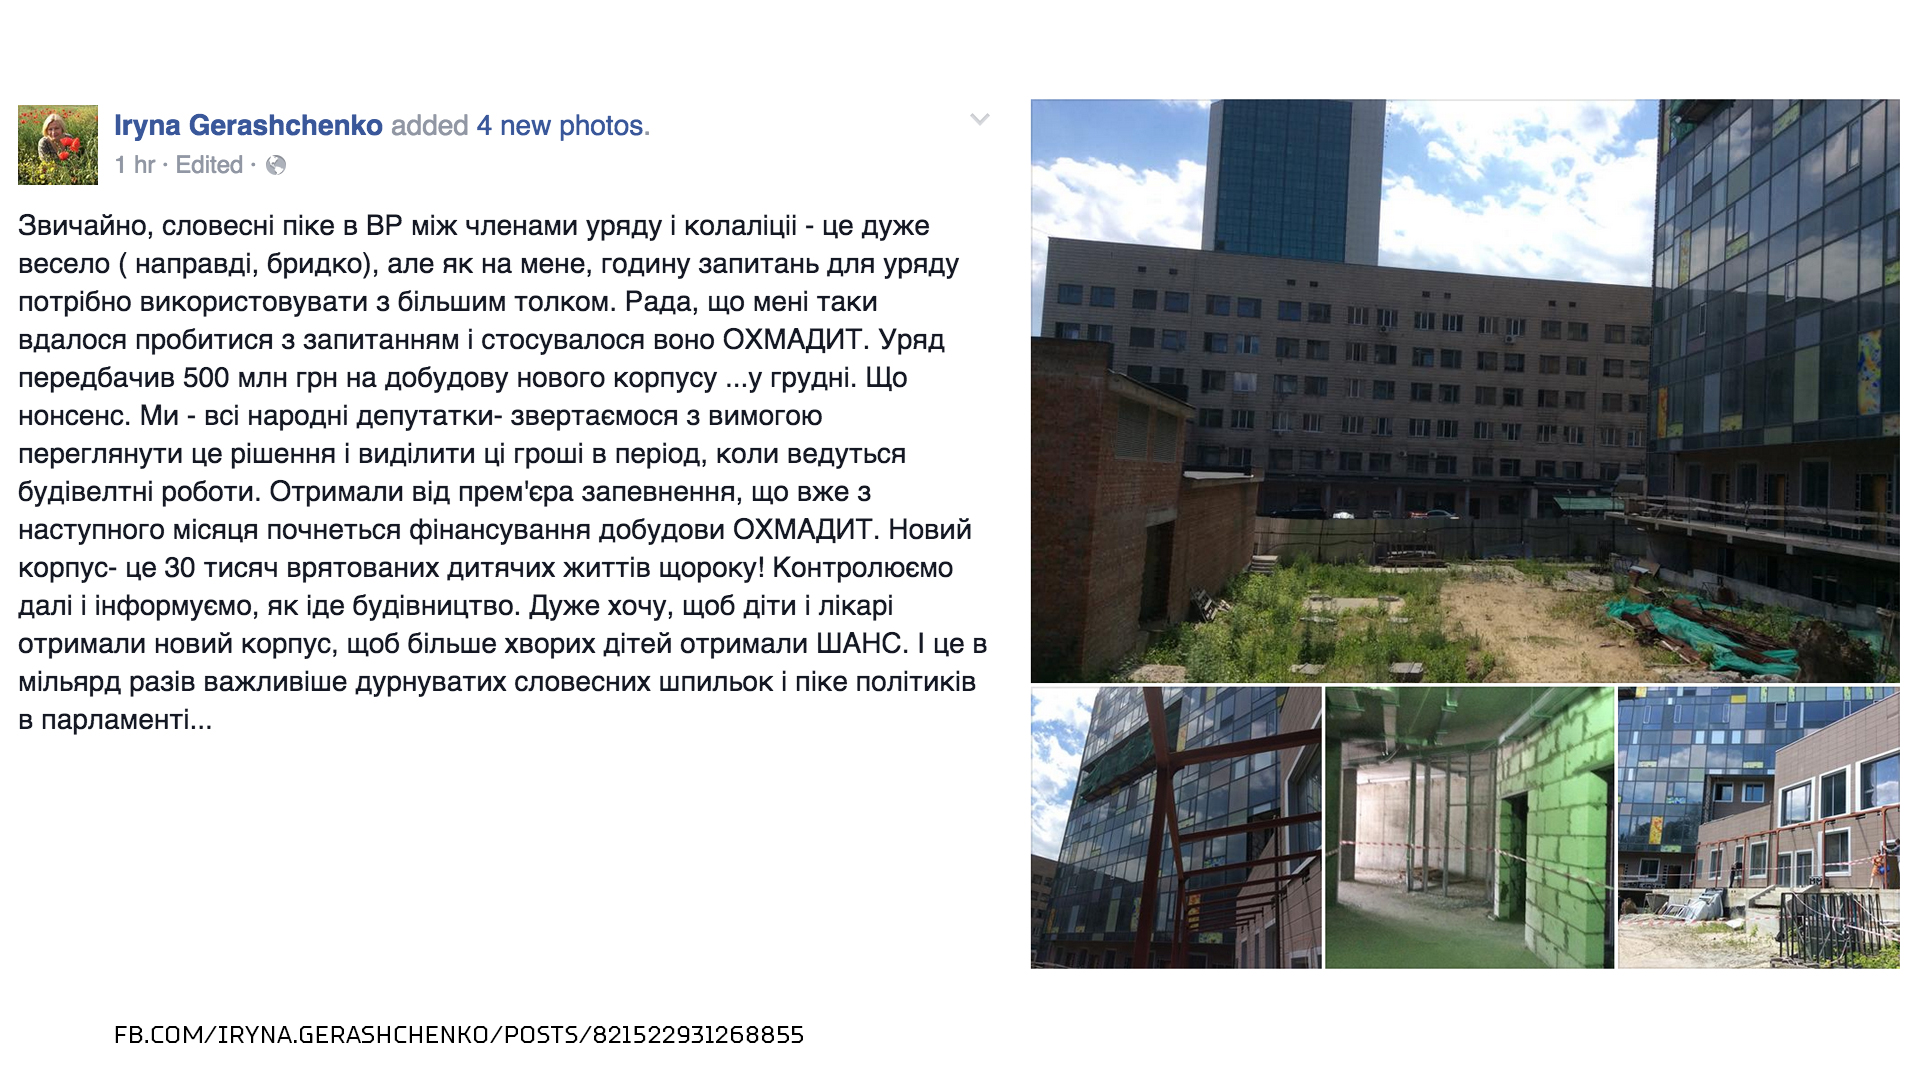 Яценюк пообіцяв, що з наступного місяця почнеться фінансування добудови "Охматдиту" - фото 1